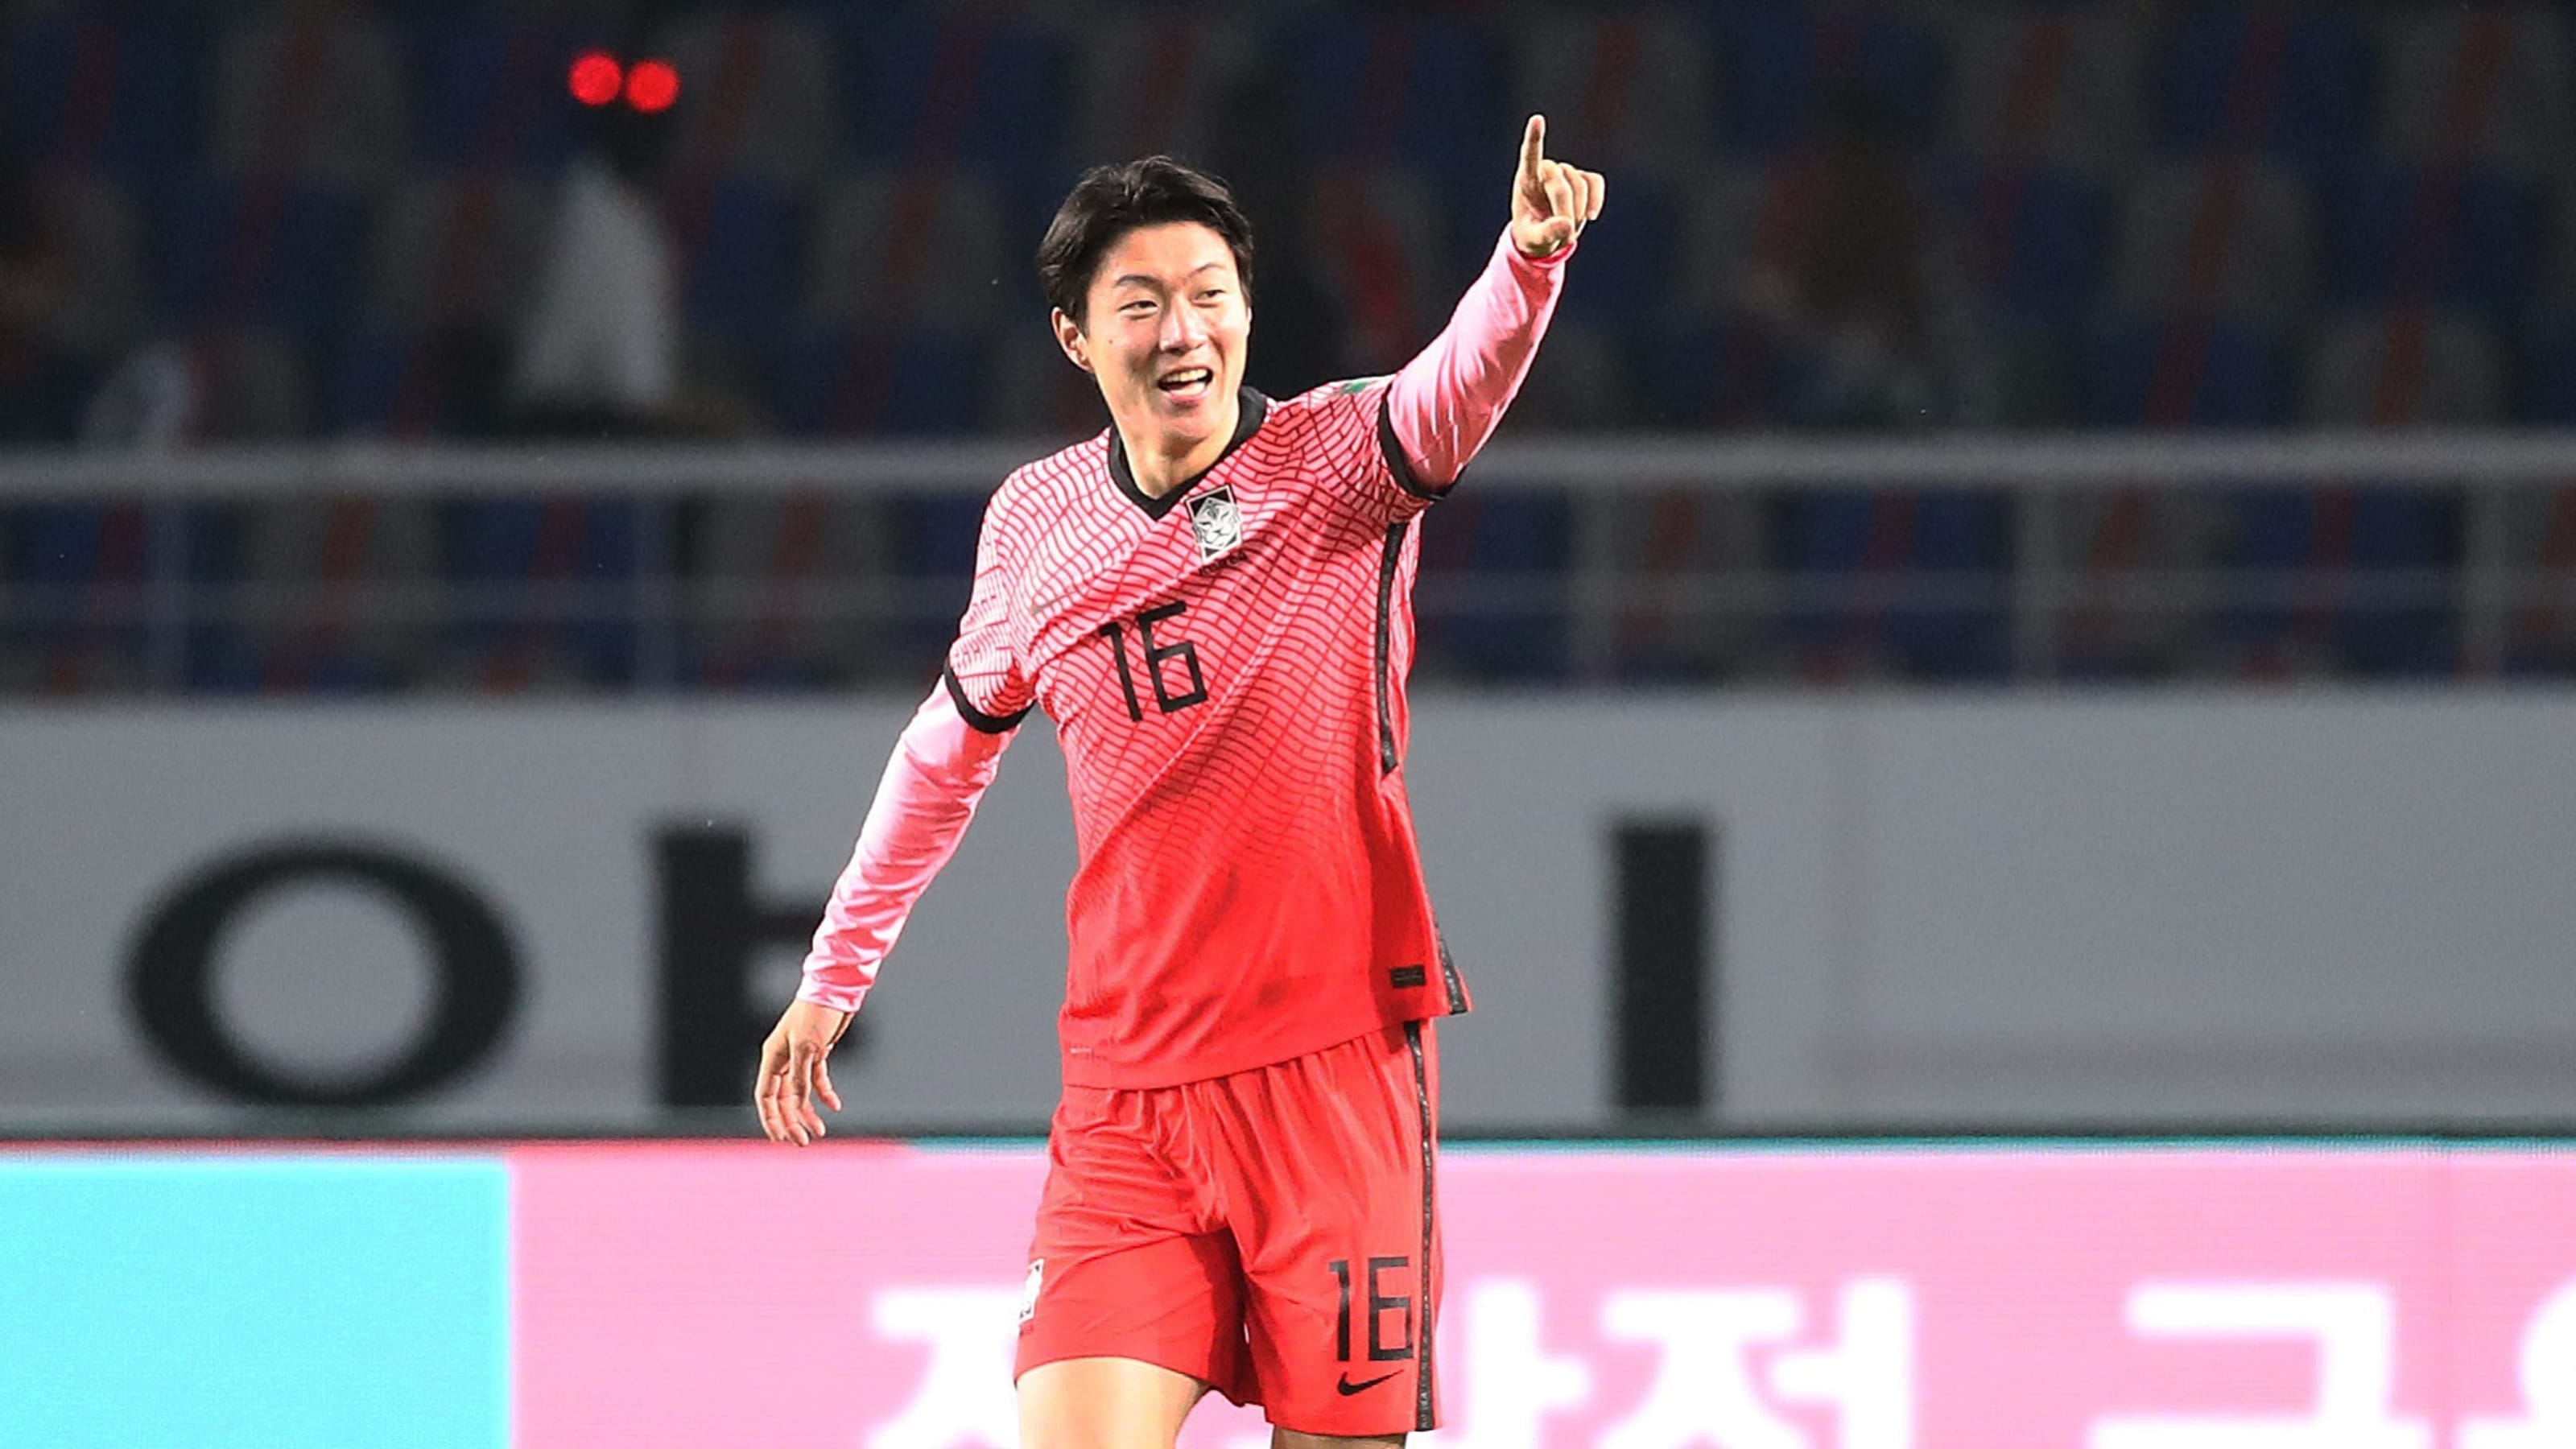 サッカー 韓国代表が五輪メンバー18名を発表 欧州組のファン ウィジョがoa枠で参加